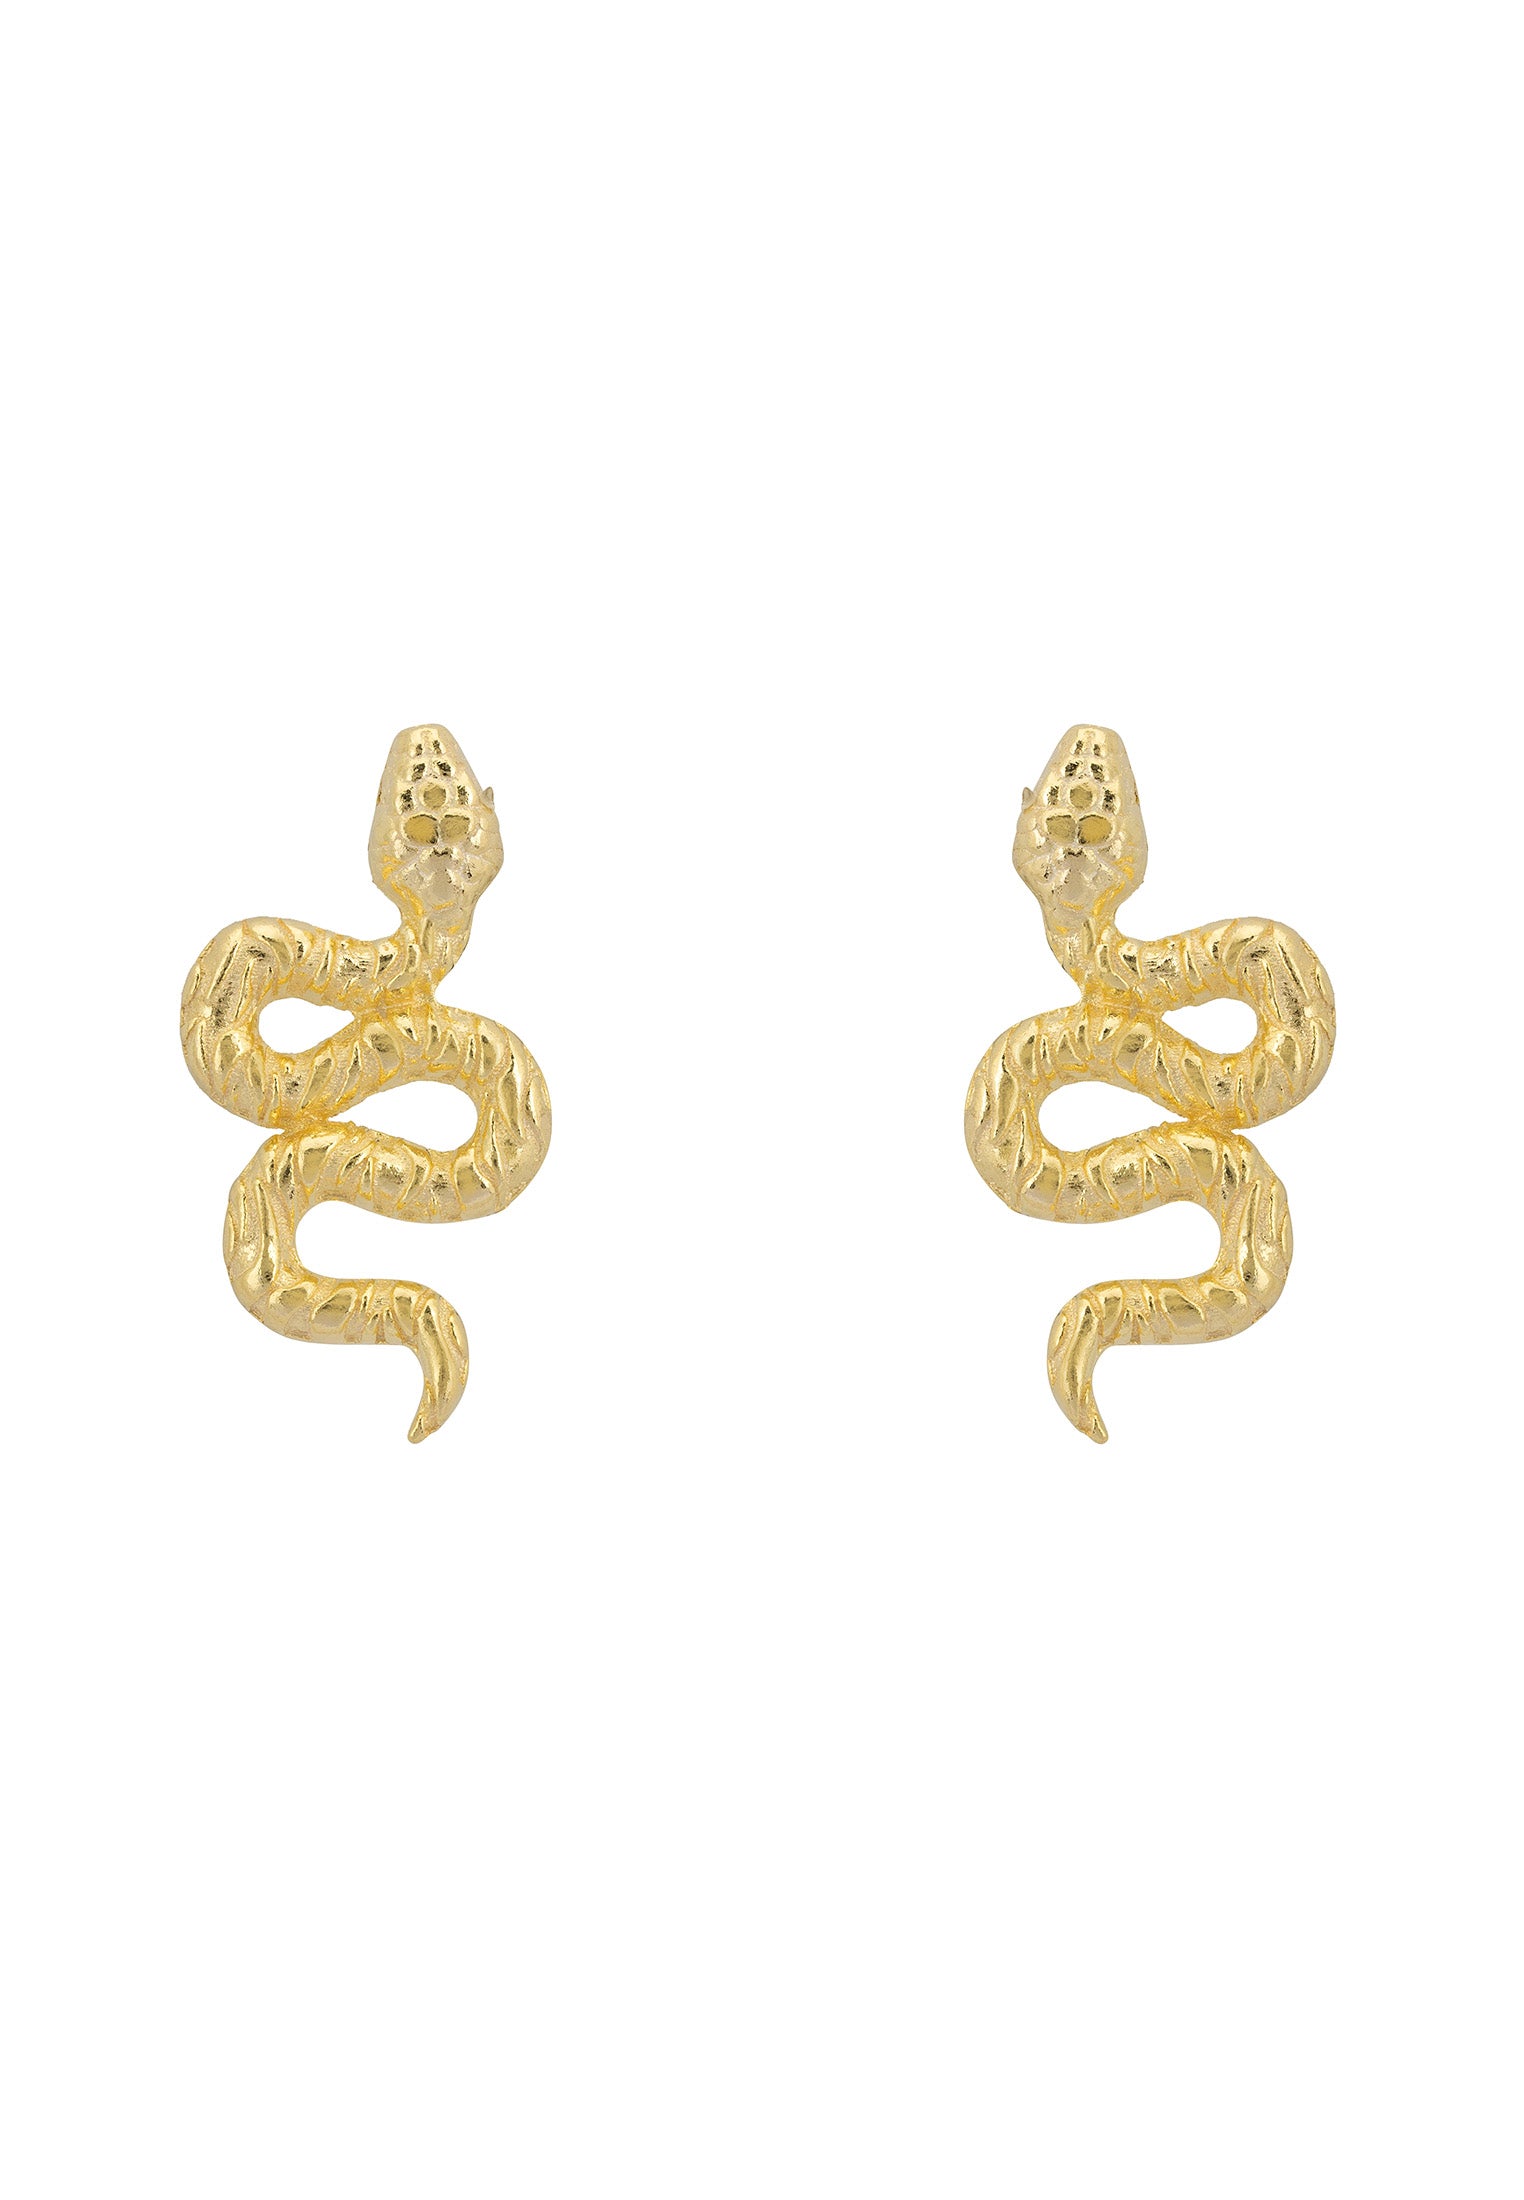 Coiled Cobra Snake Stud Earrings Gold